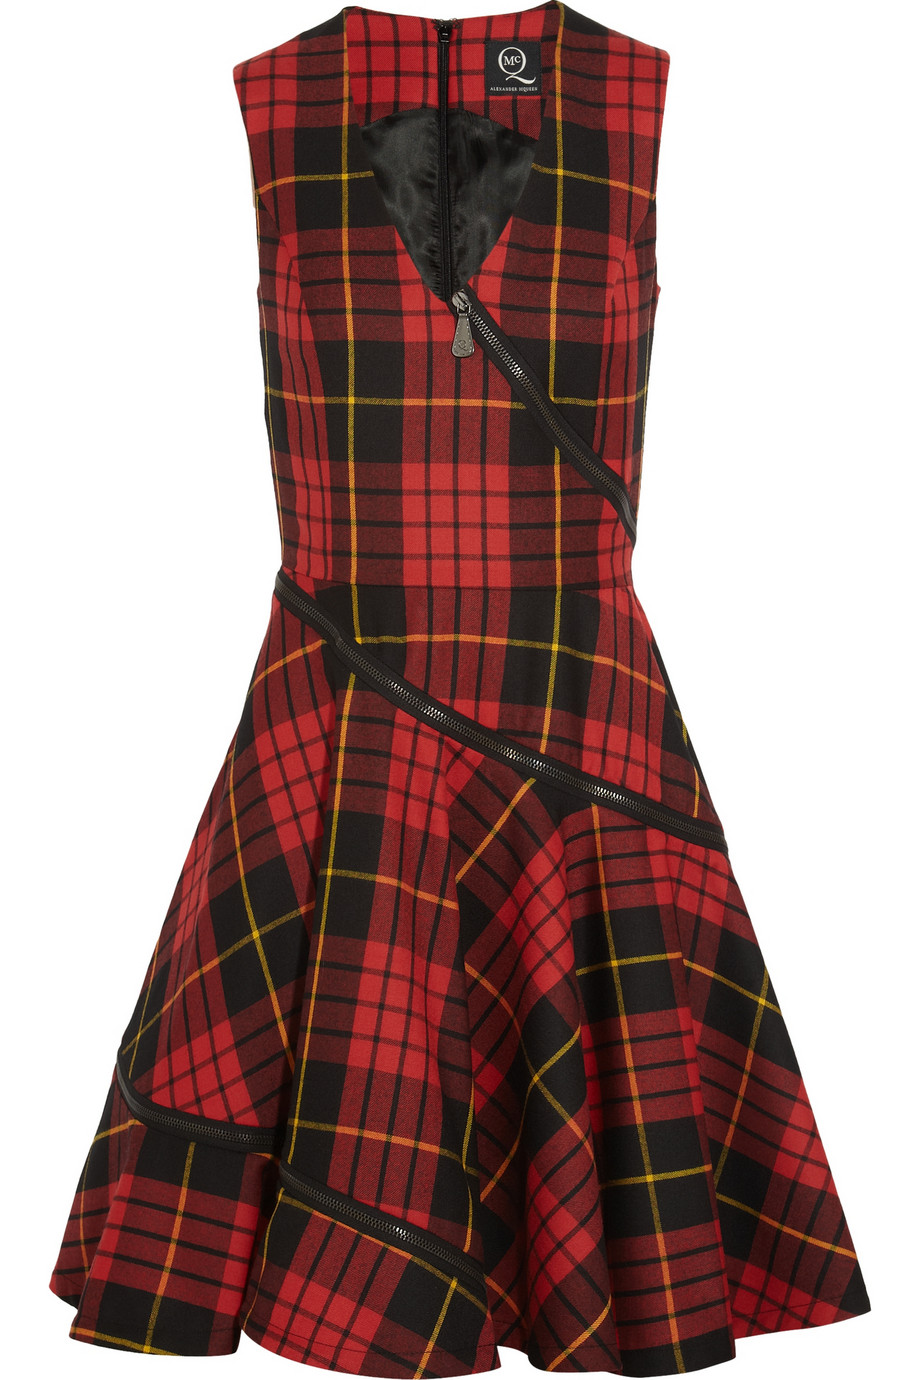 McQ Tartan Wool Dress in Red Lyst